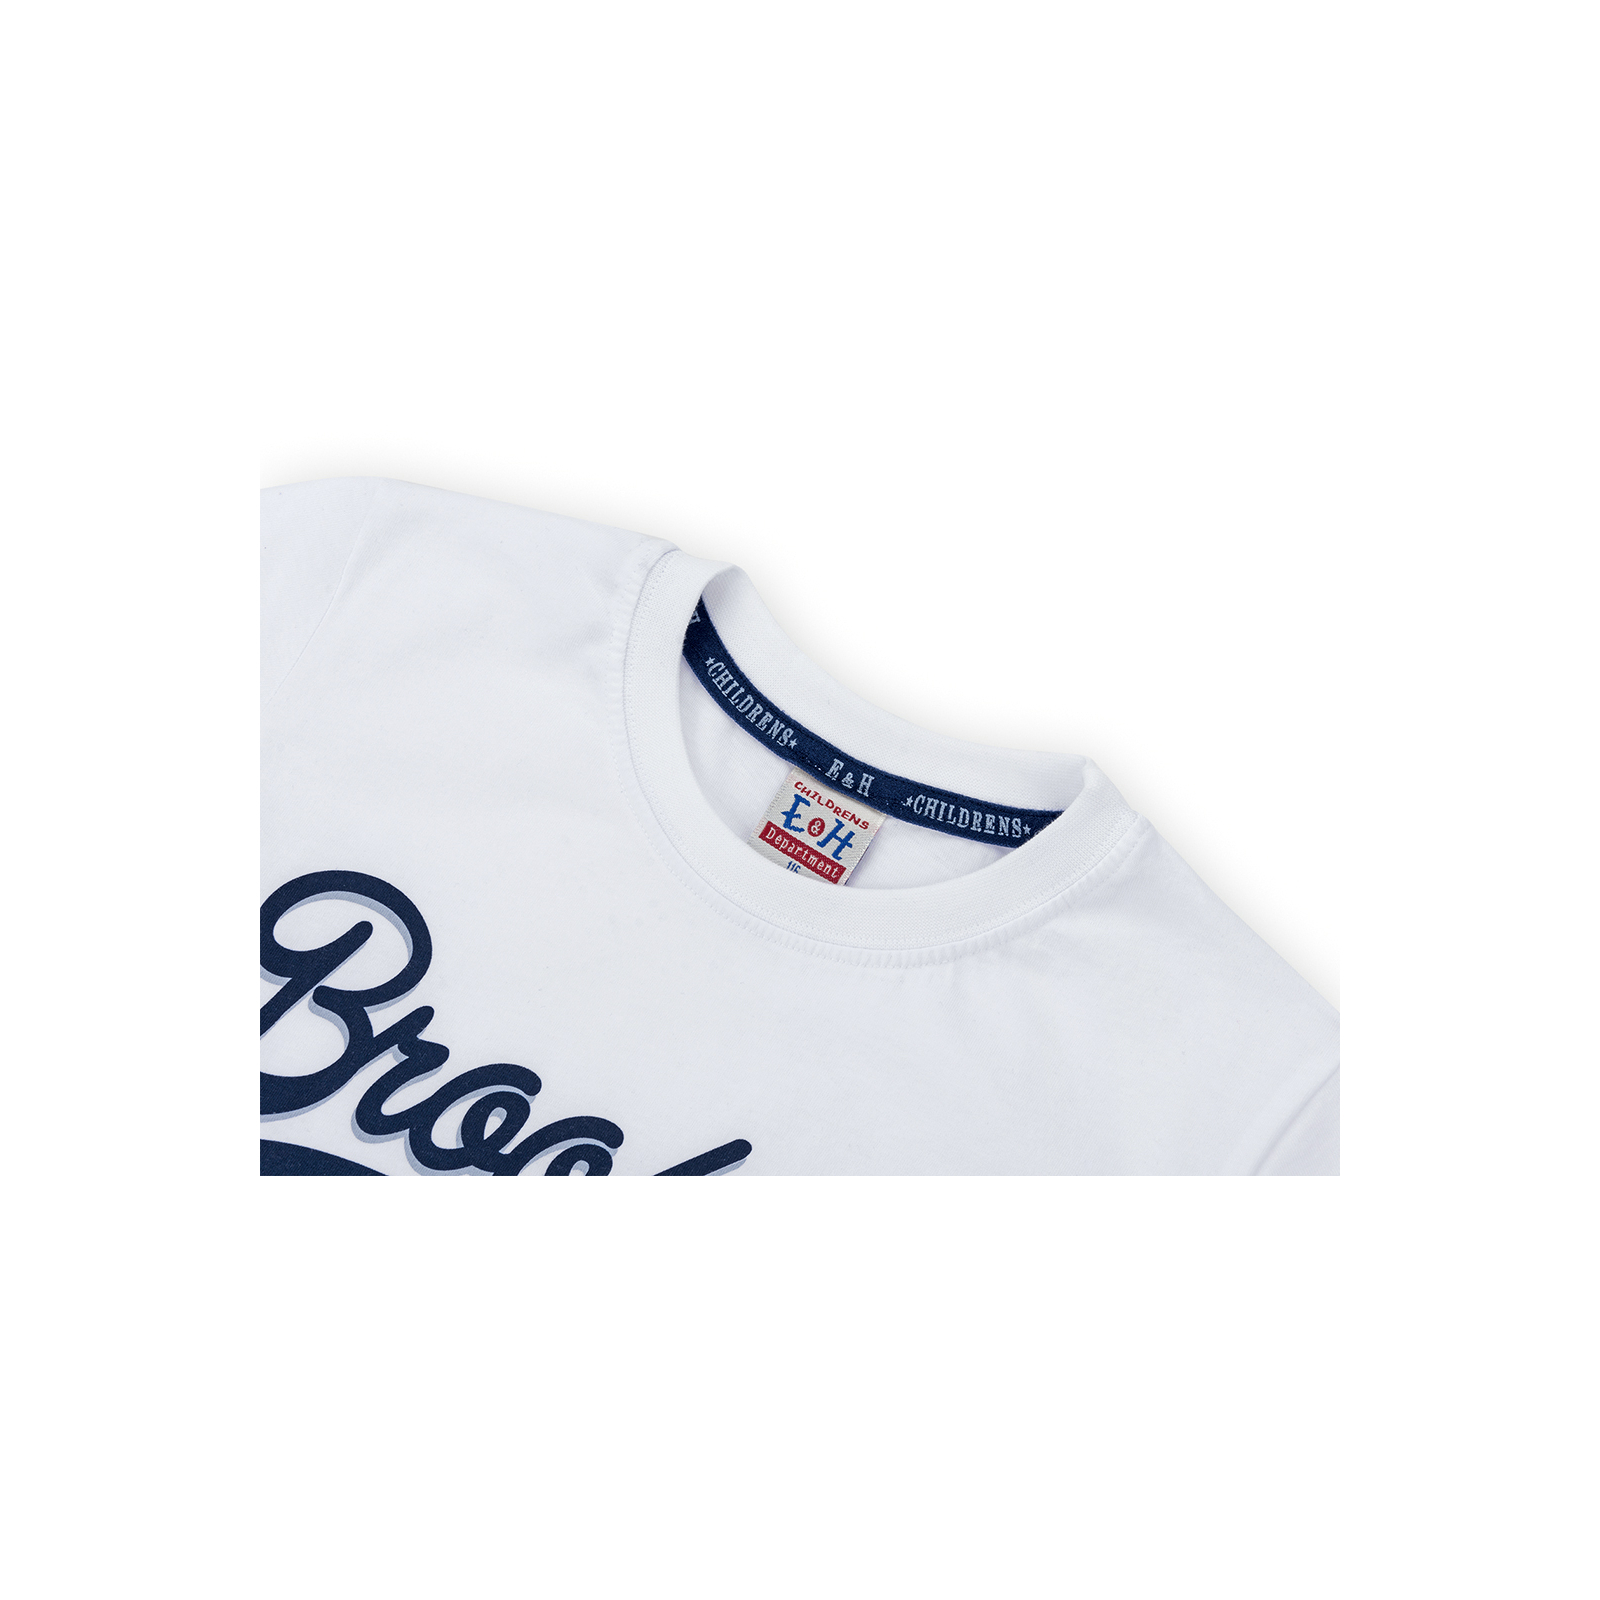 Набор детской одежды Breeze футболка "Brooklyn ATH" с шортами (8932-116B-white) изображение 4